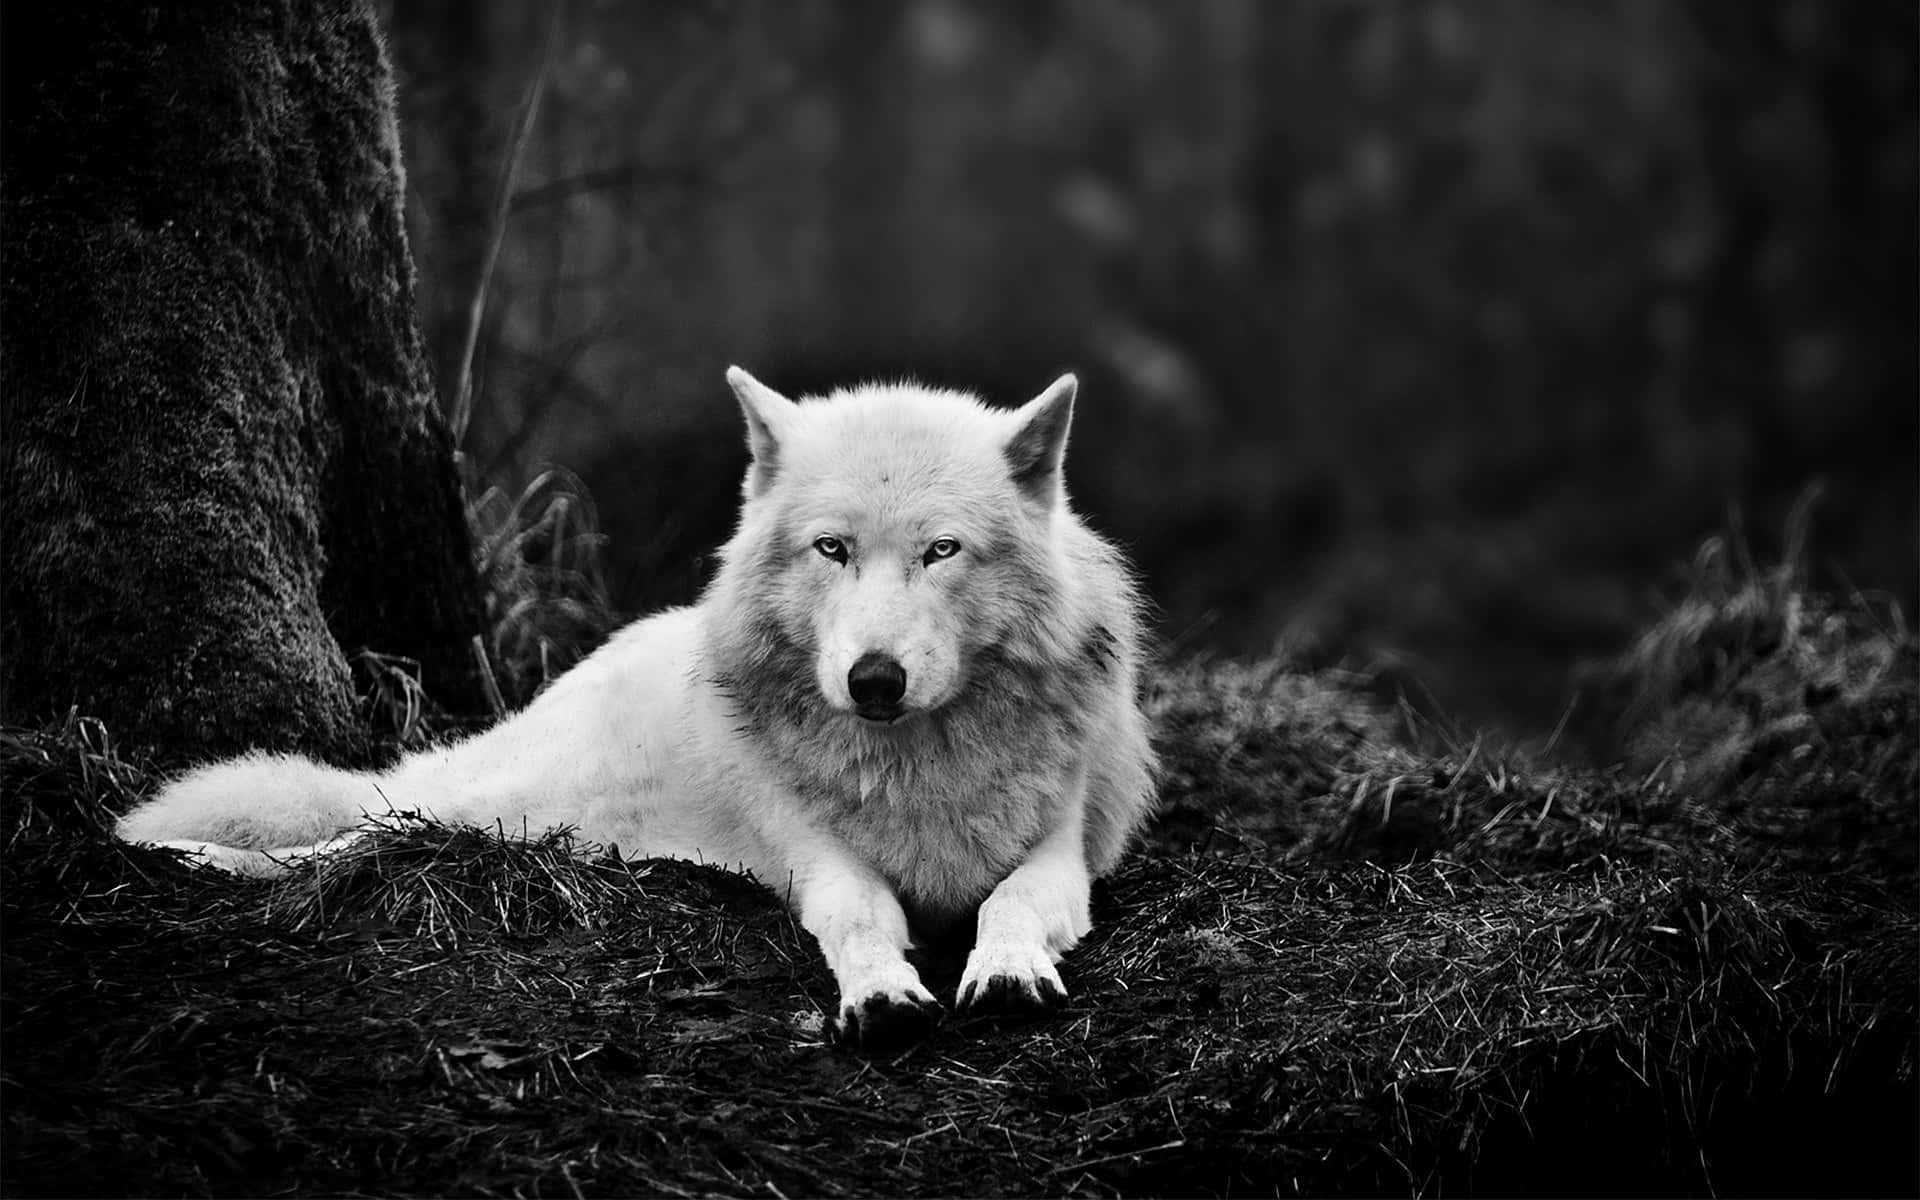 Wild wolf in the wilderness